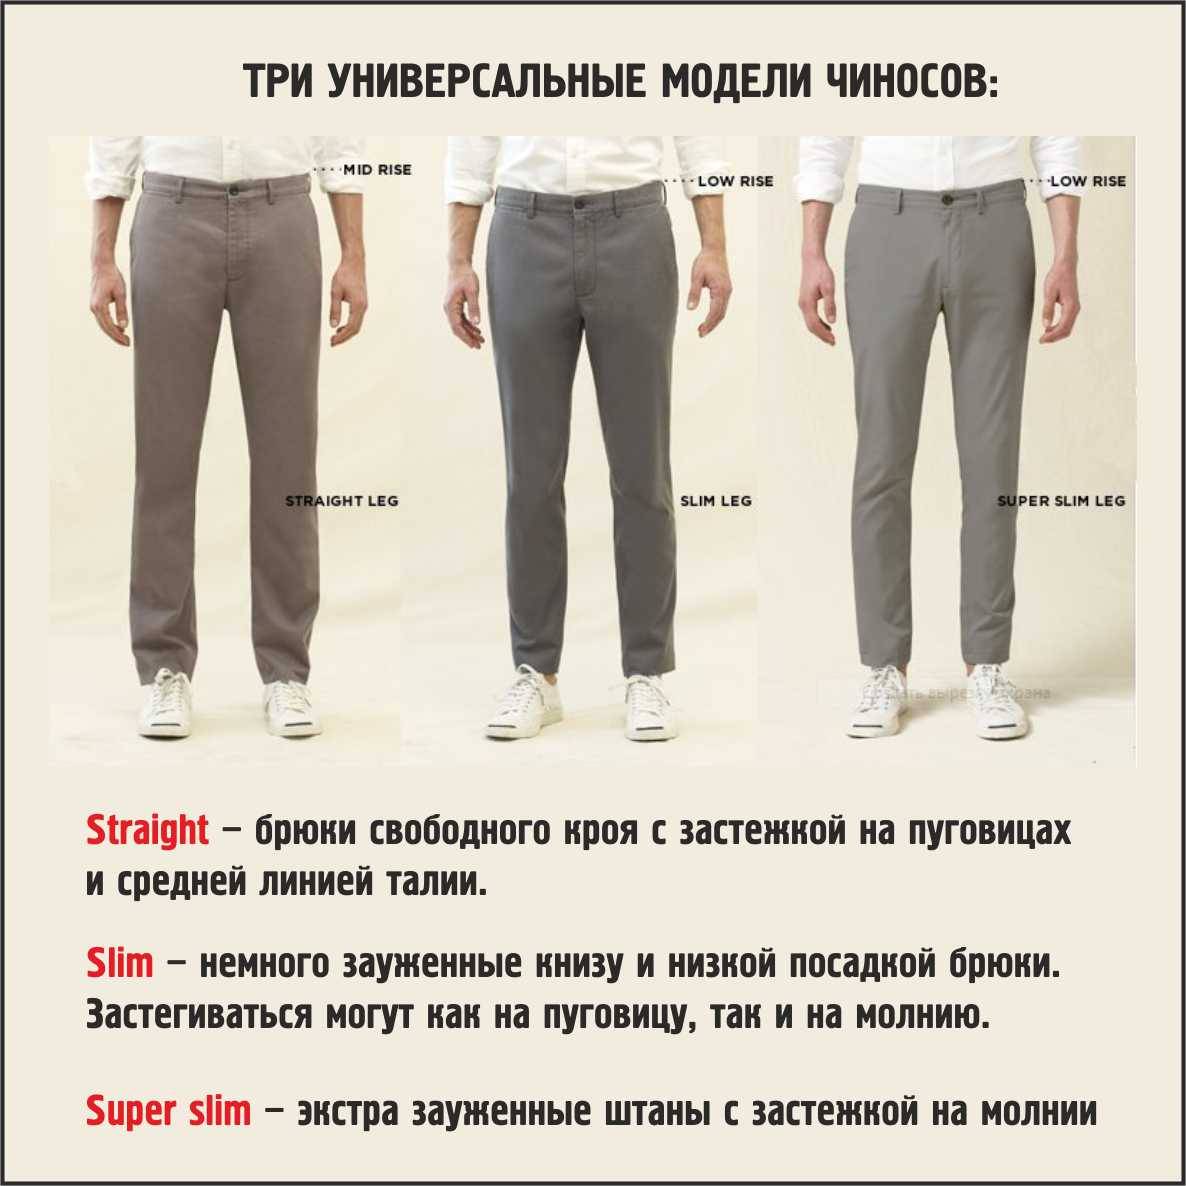 Что такое чиносы, как выбрать и с чем носить? :: syl.ru